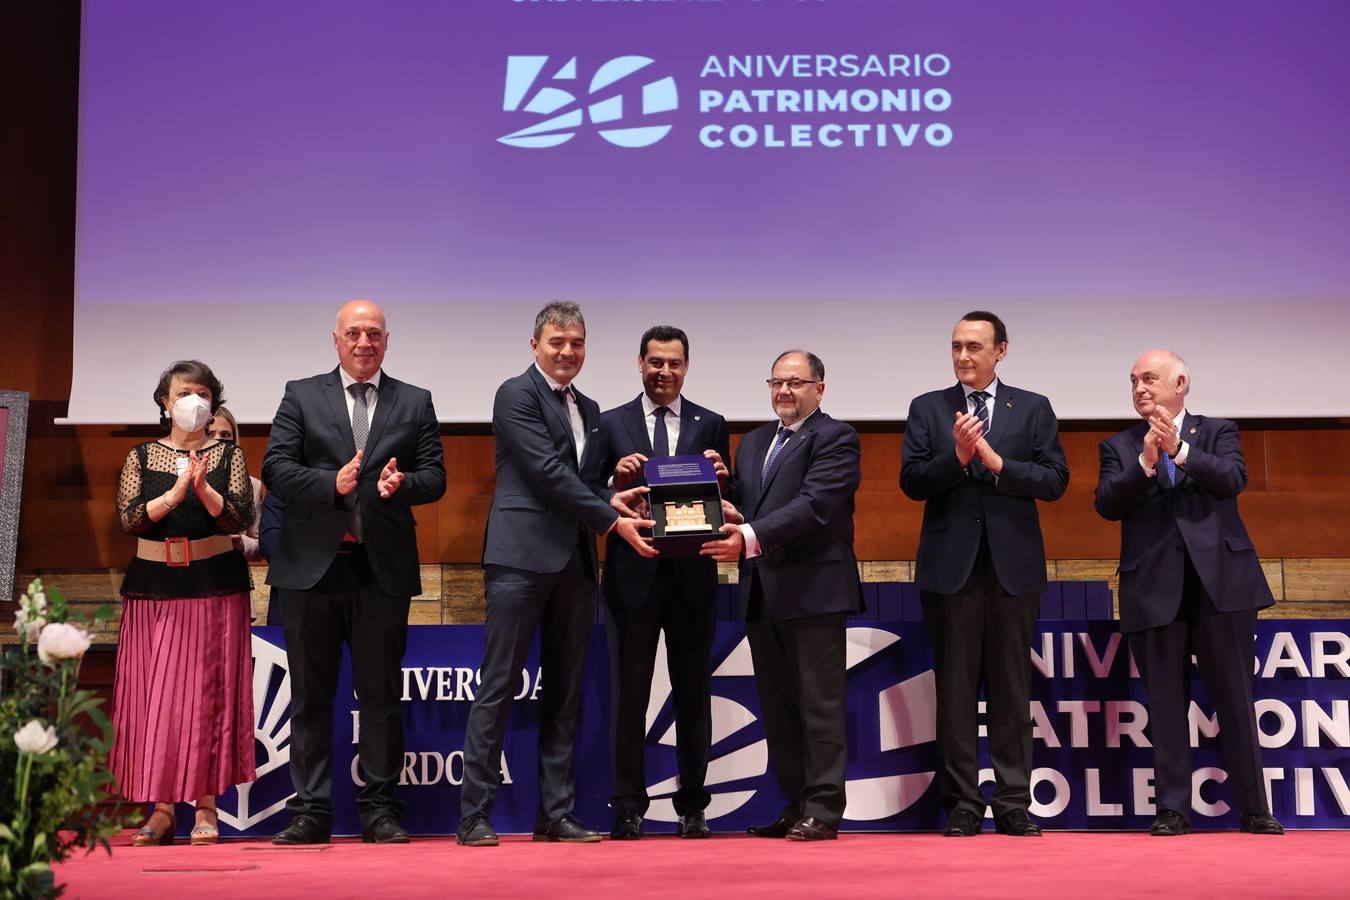 El reconocimiento de la Universidad de Córdoba a la sociedad en sus 50 años, en imágenes